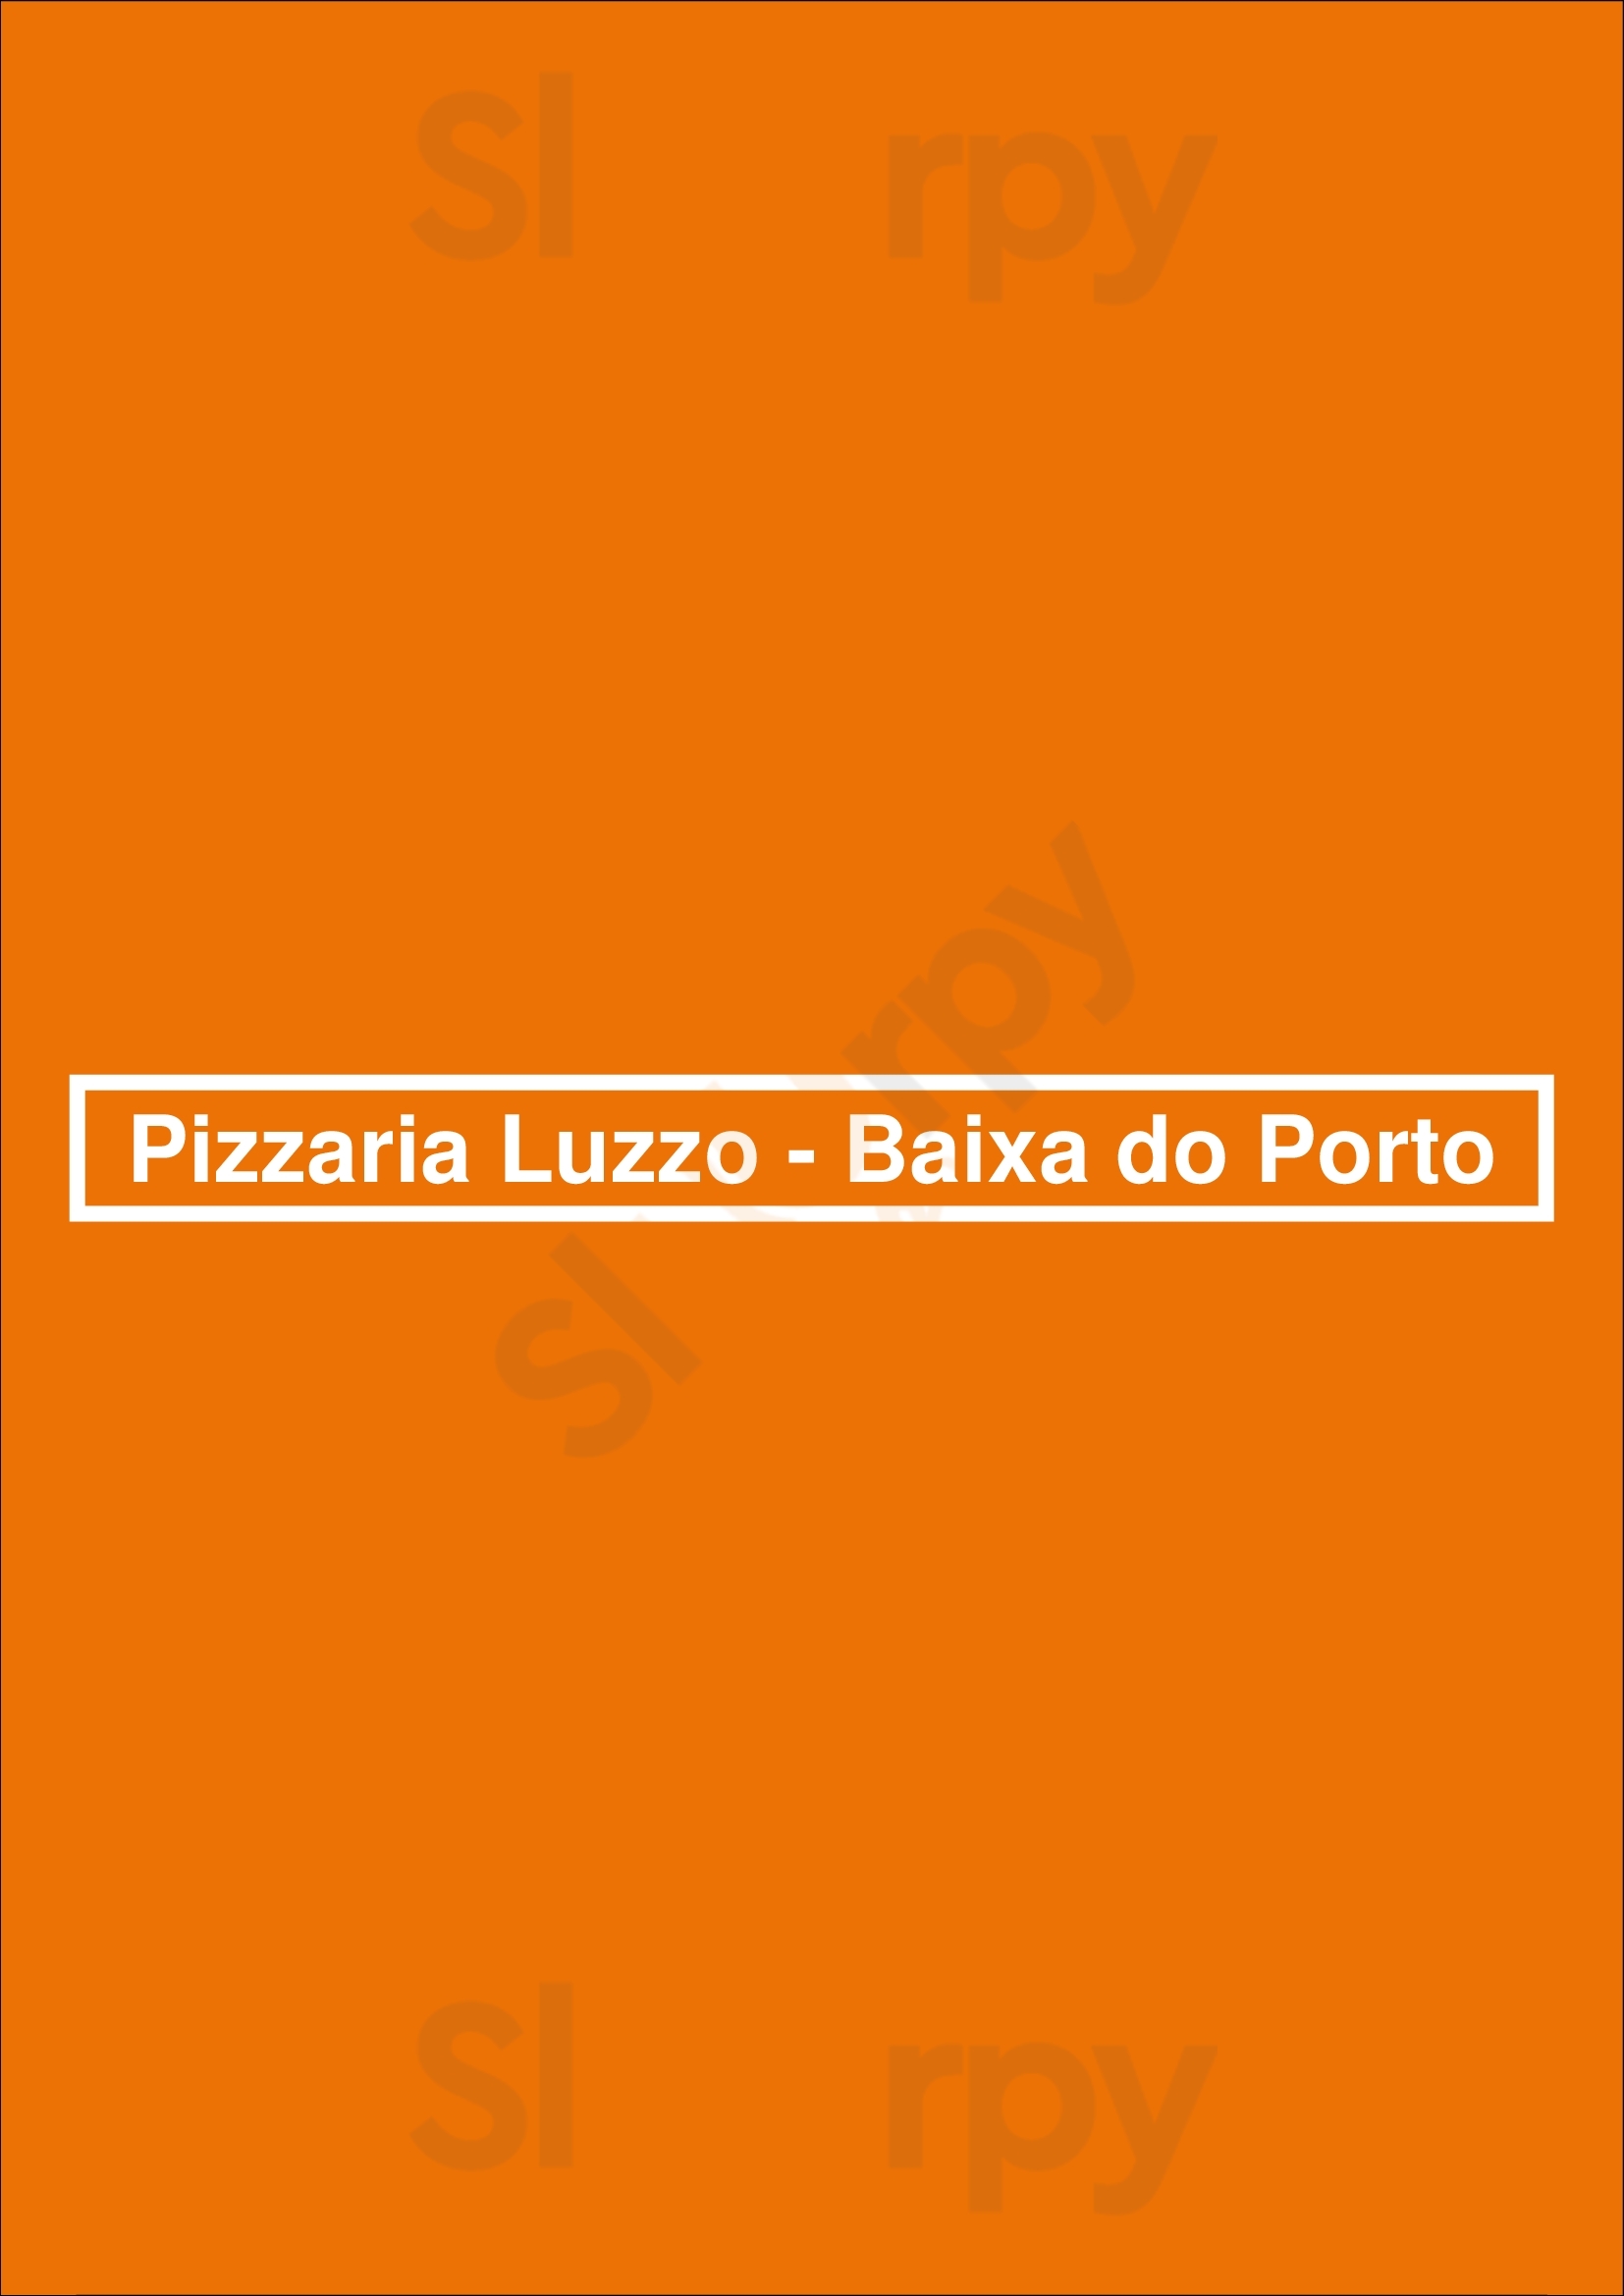 Pizzaria Luzzo - Baixa Do Porto Porto Menu - 1